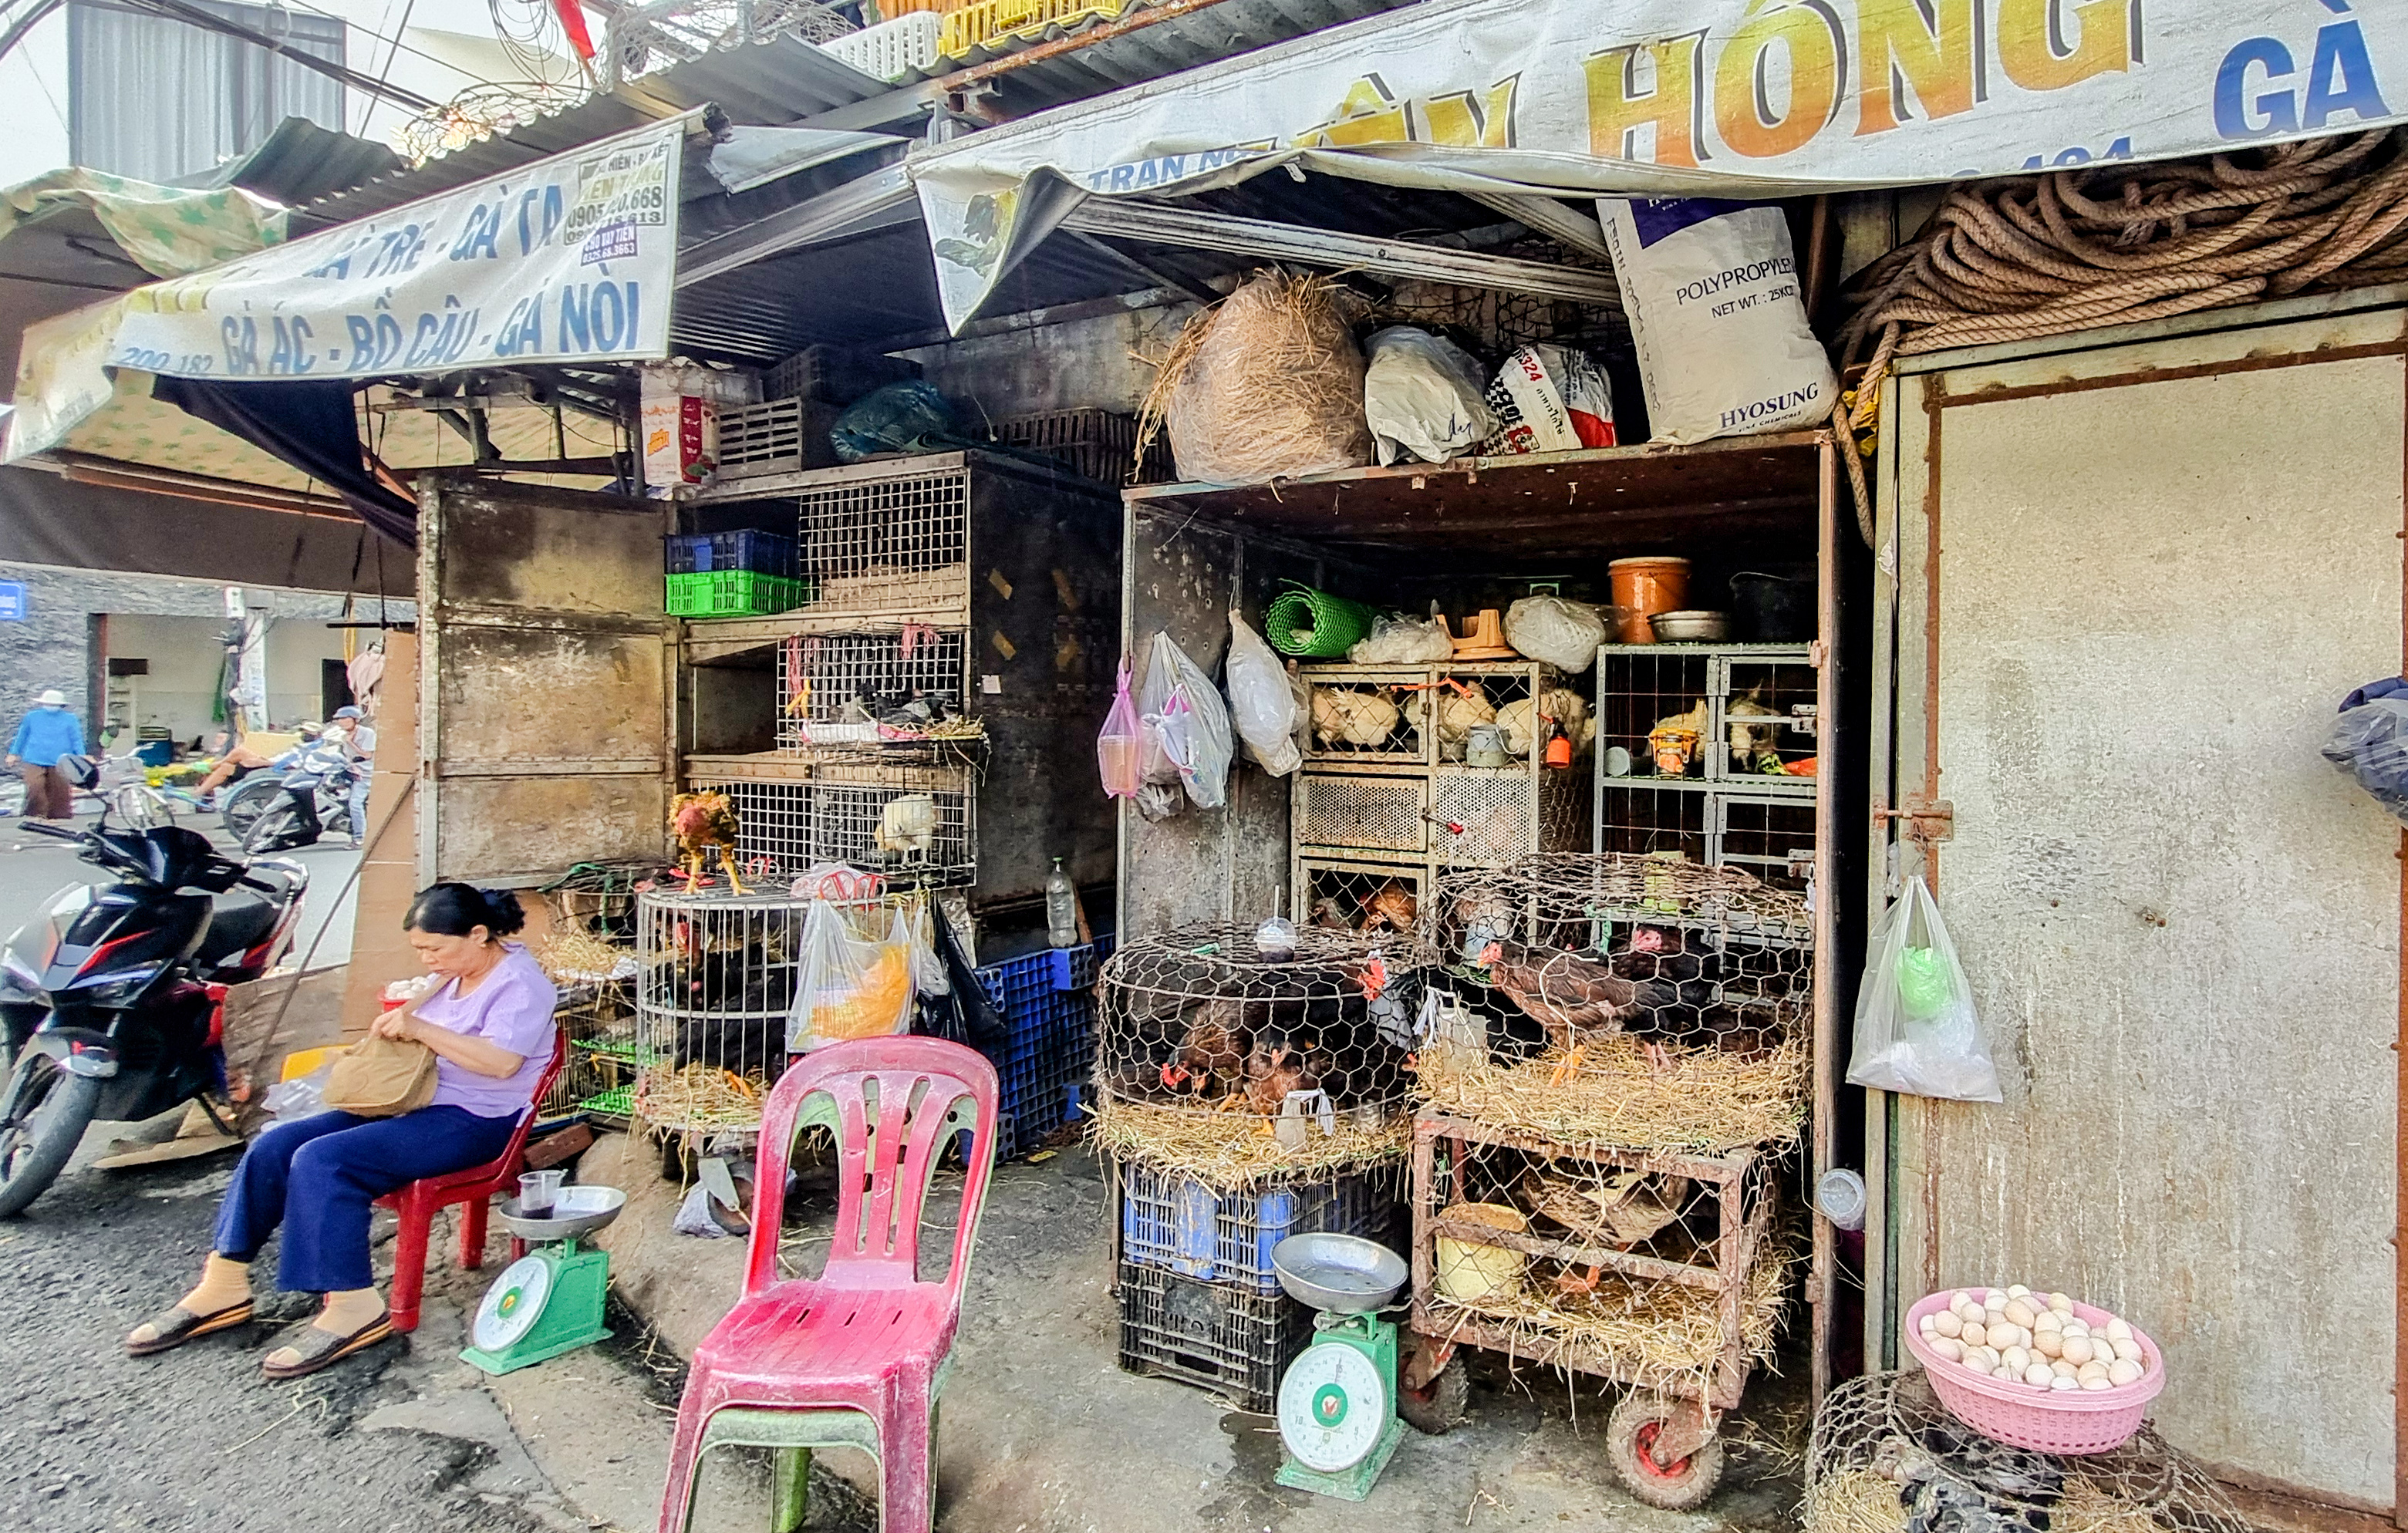 Hàng quán bán thịt gà đóng cửa, chợ vắng người mua sau các vụ ngộ độc ở Nha Trang